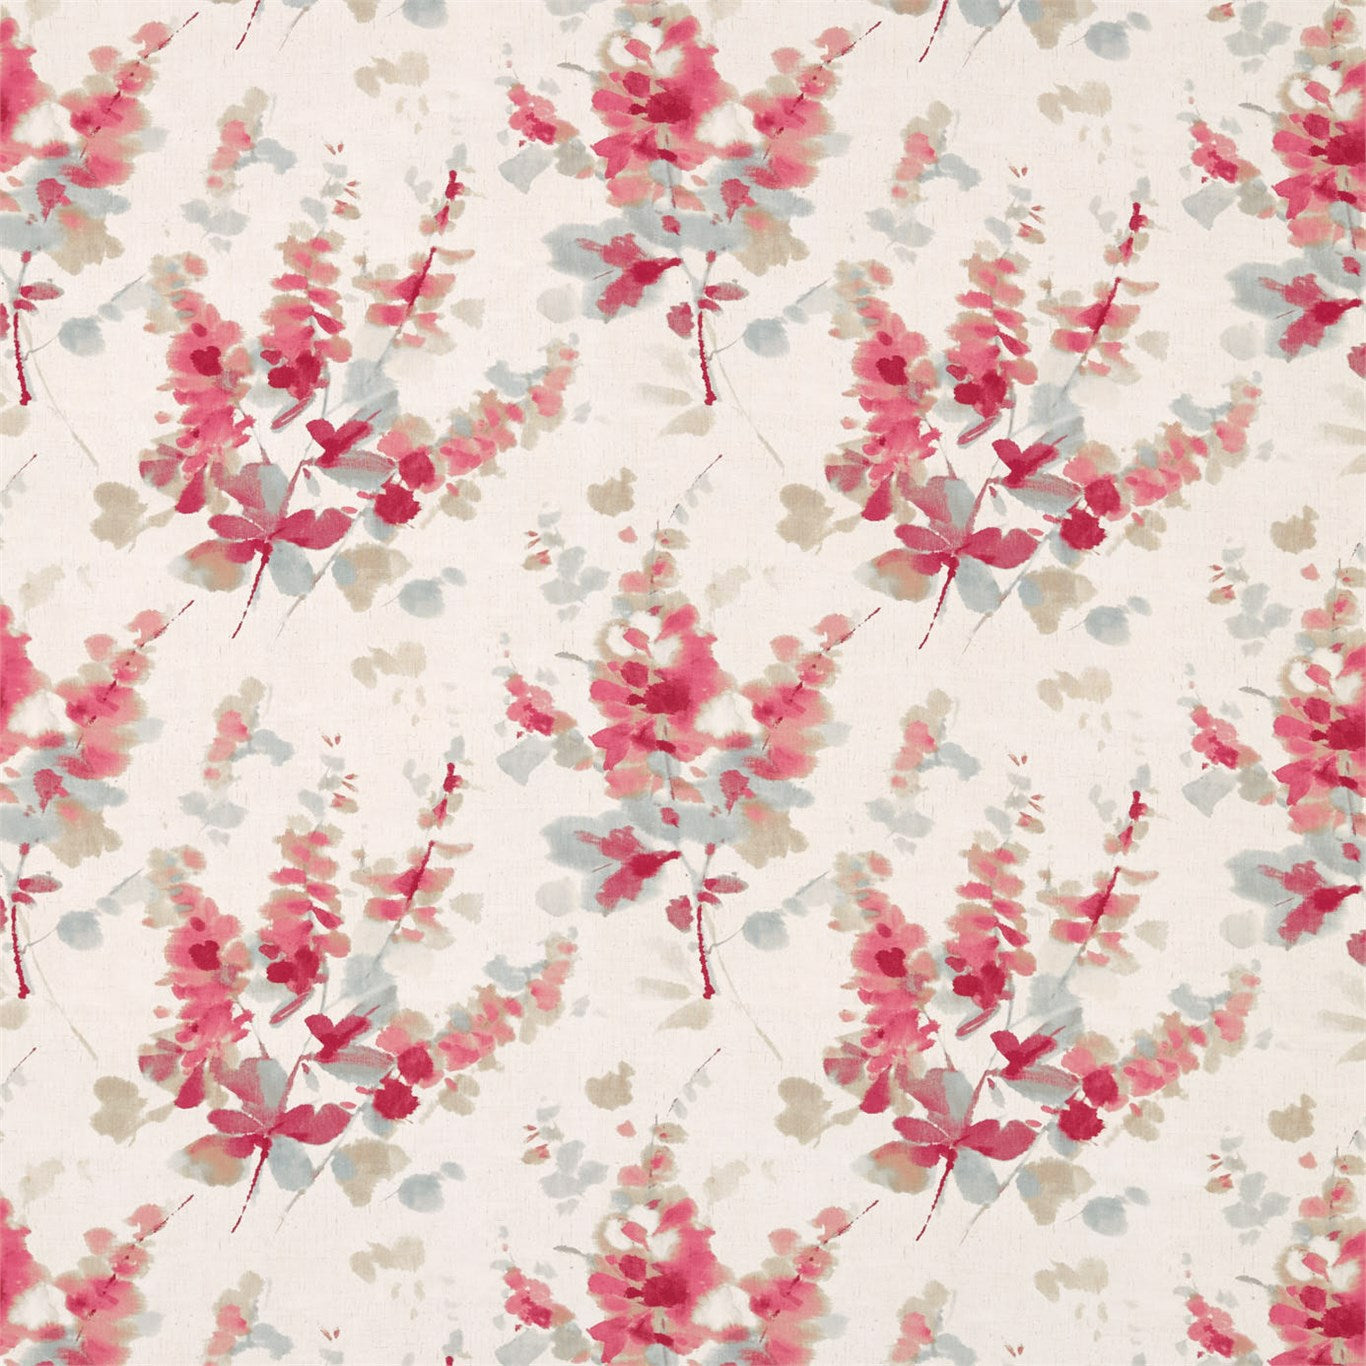 Delphiniums Fabric by Sanderson - DWAP226290 - Coral